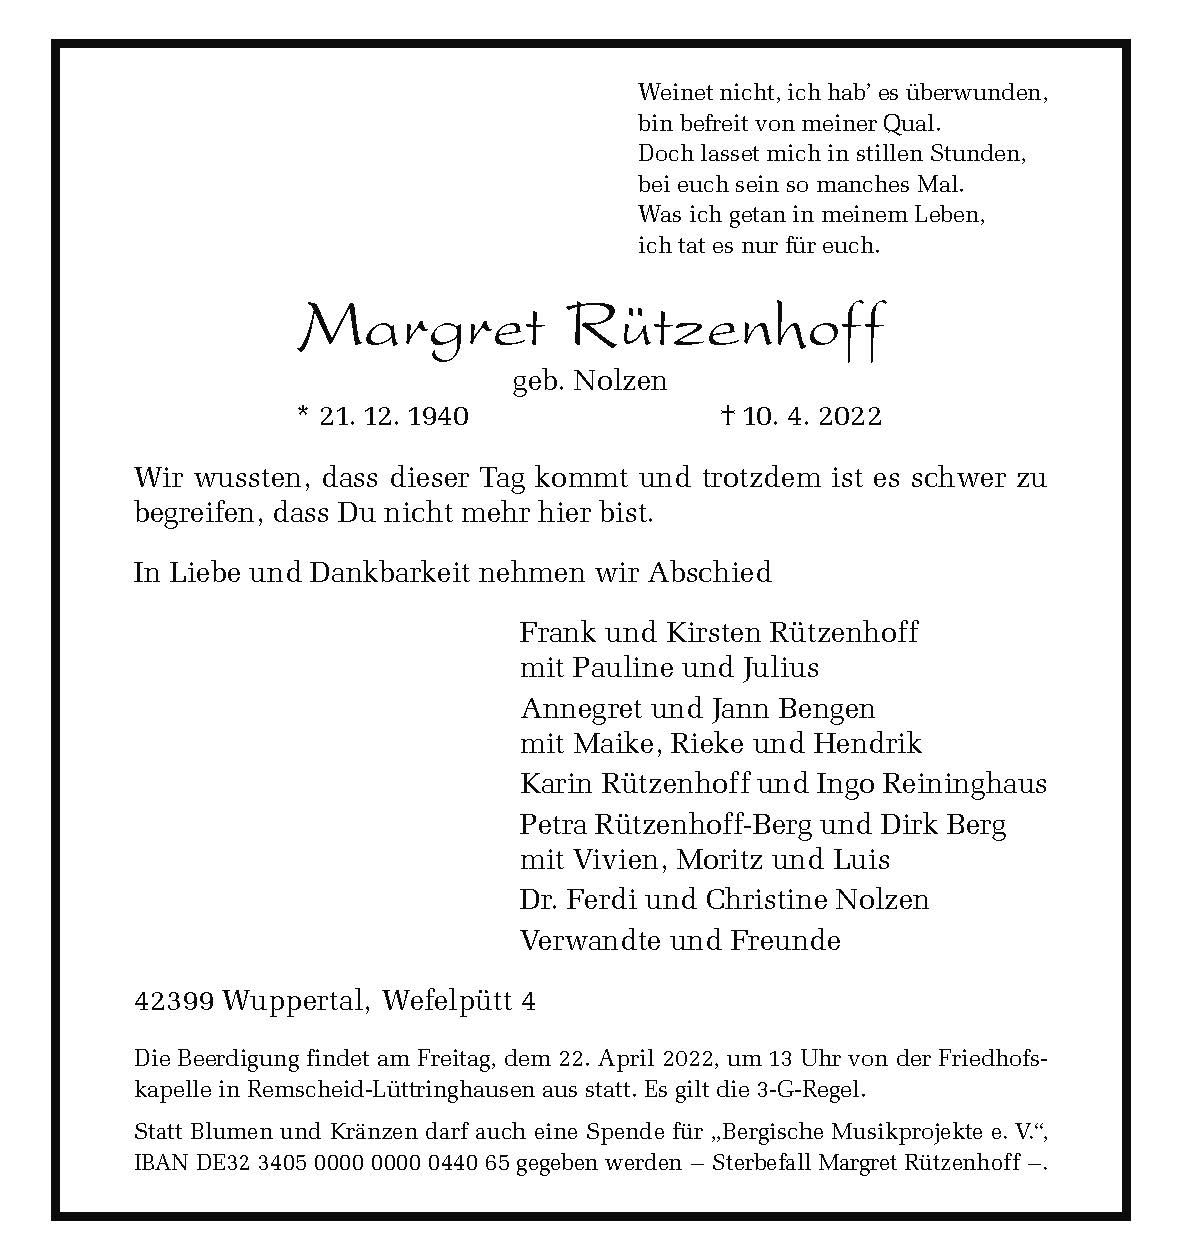 Margret Rützenhoff